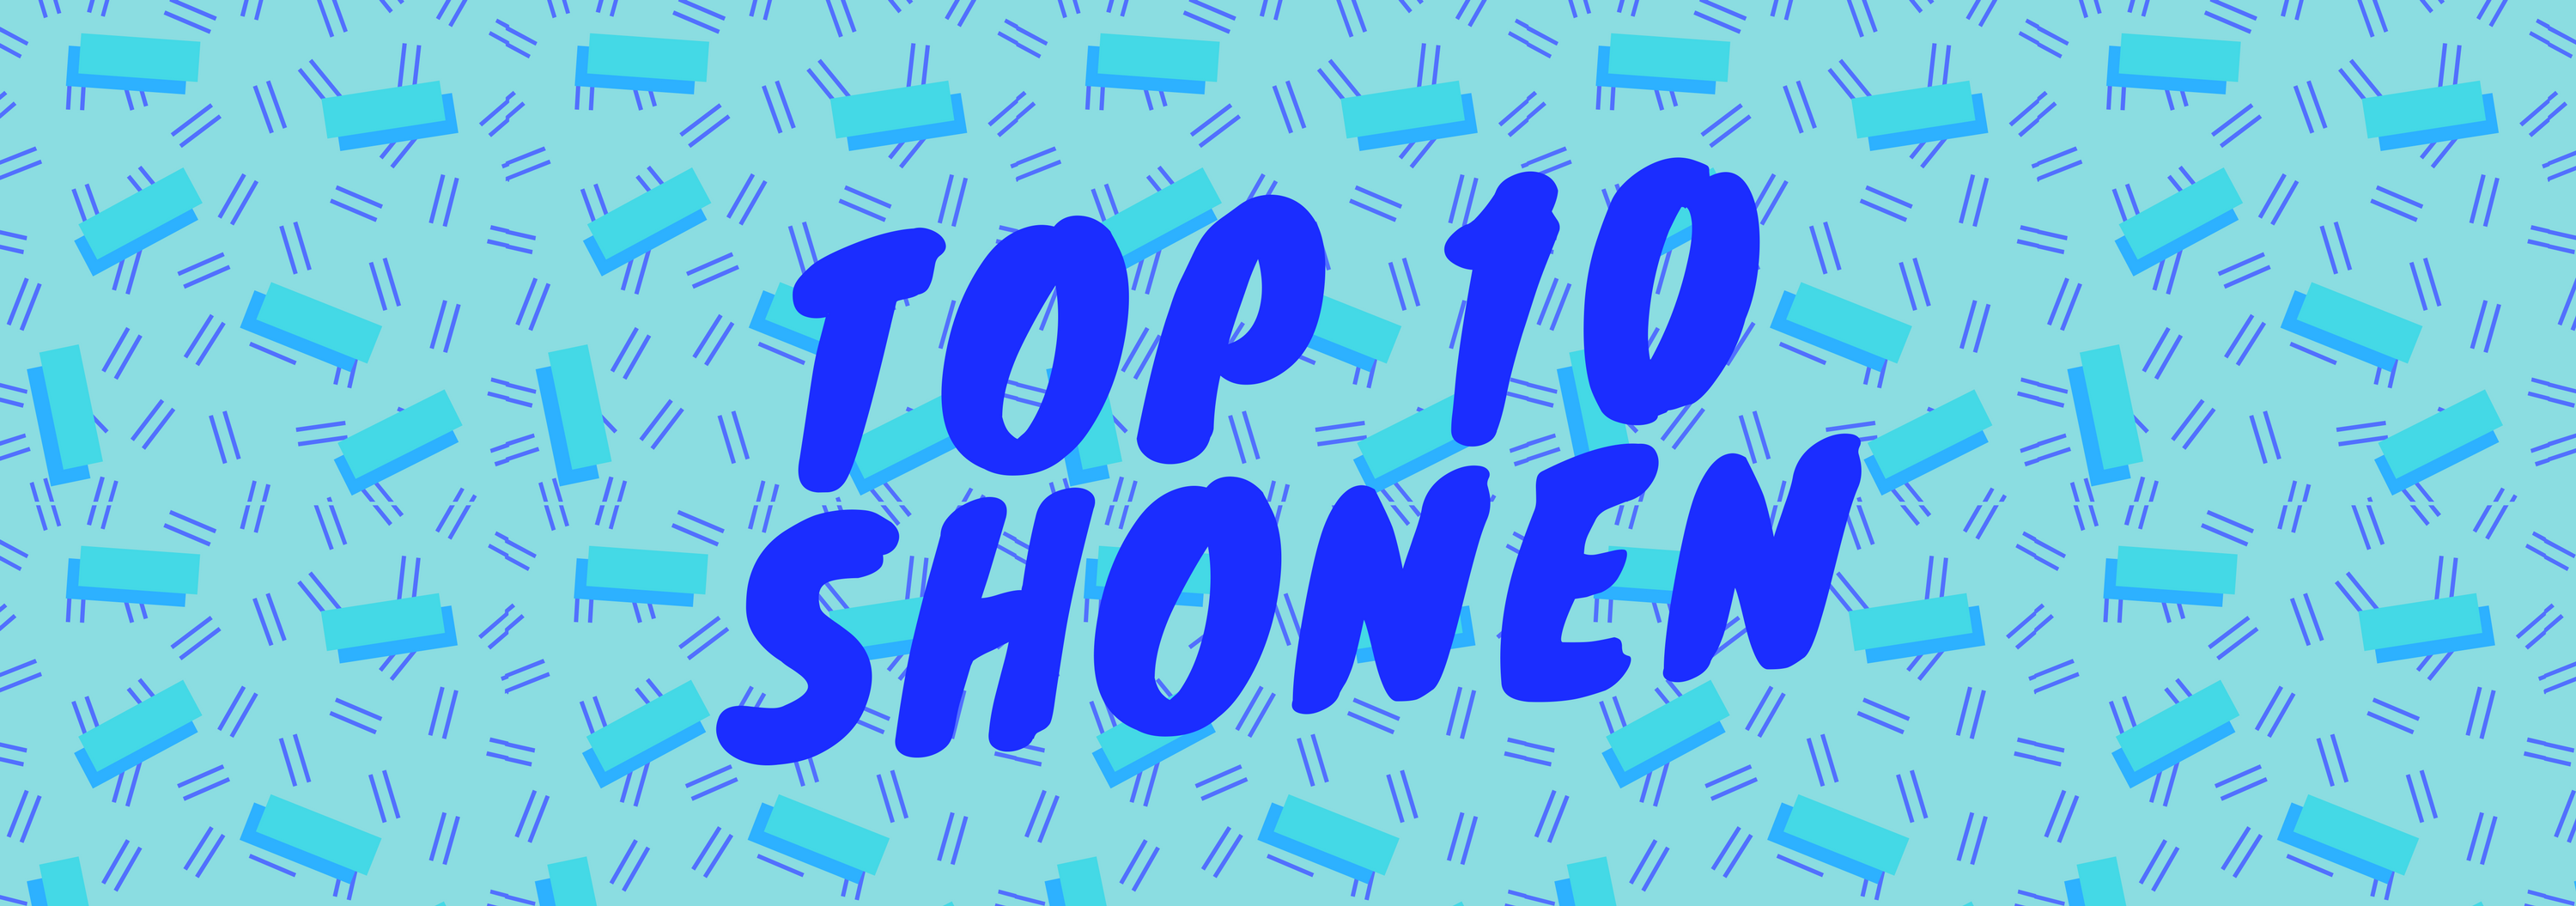 TOP 10shonen